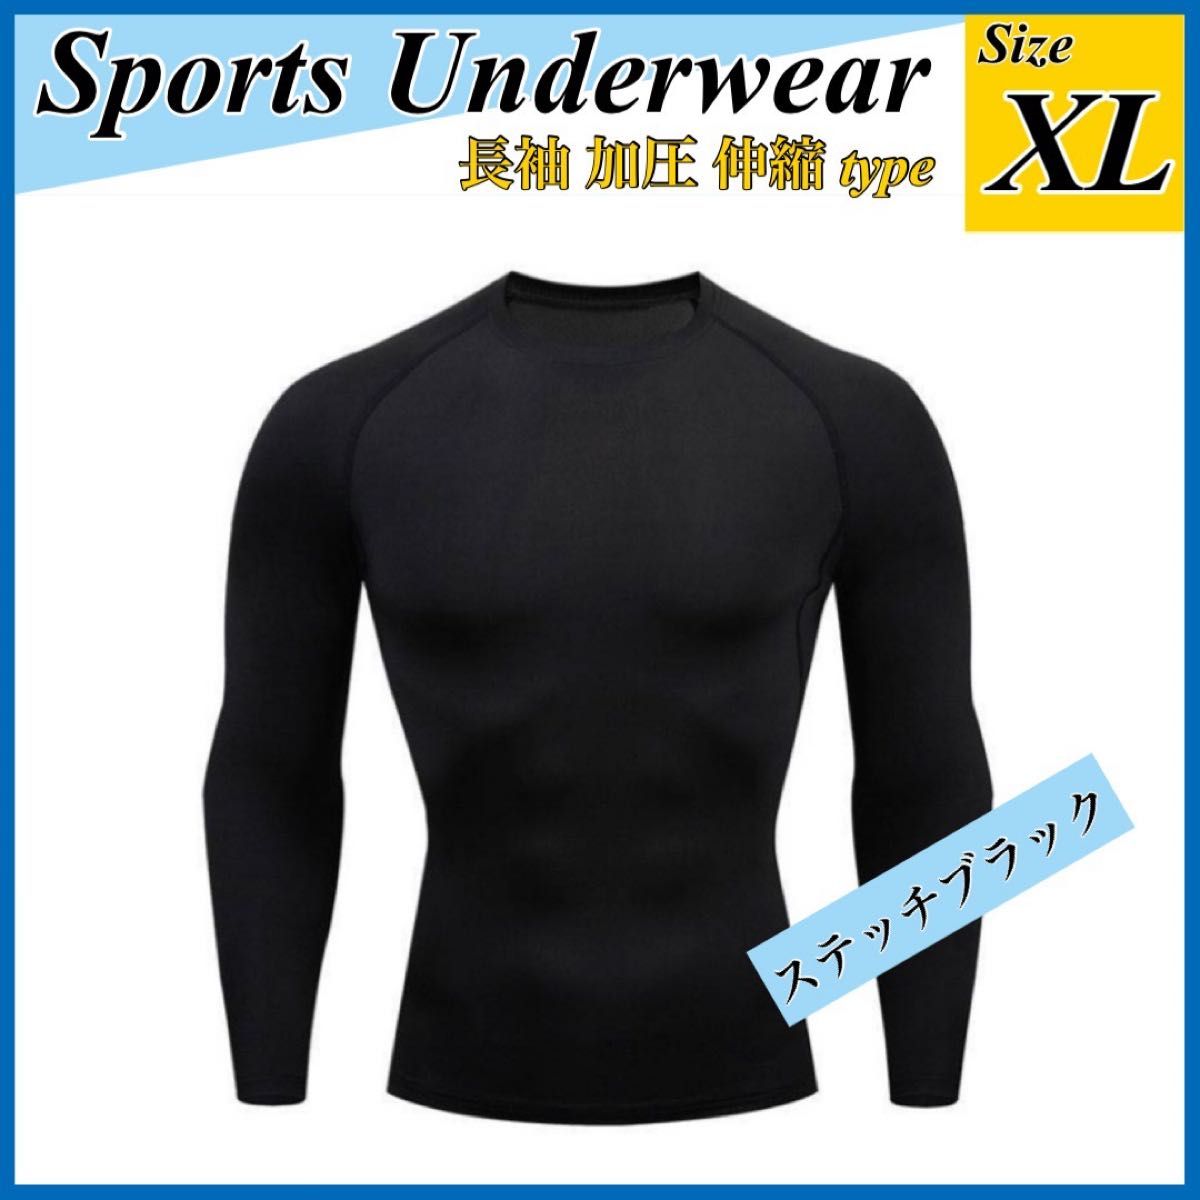 XL UVカット アンダーウェア 黒 スポーツ インナー 長袖 速乾 spf50 ブラック オールシーズン 日焼け対策 テニス